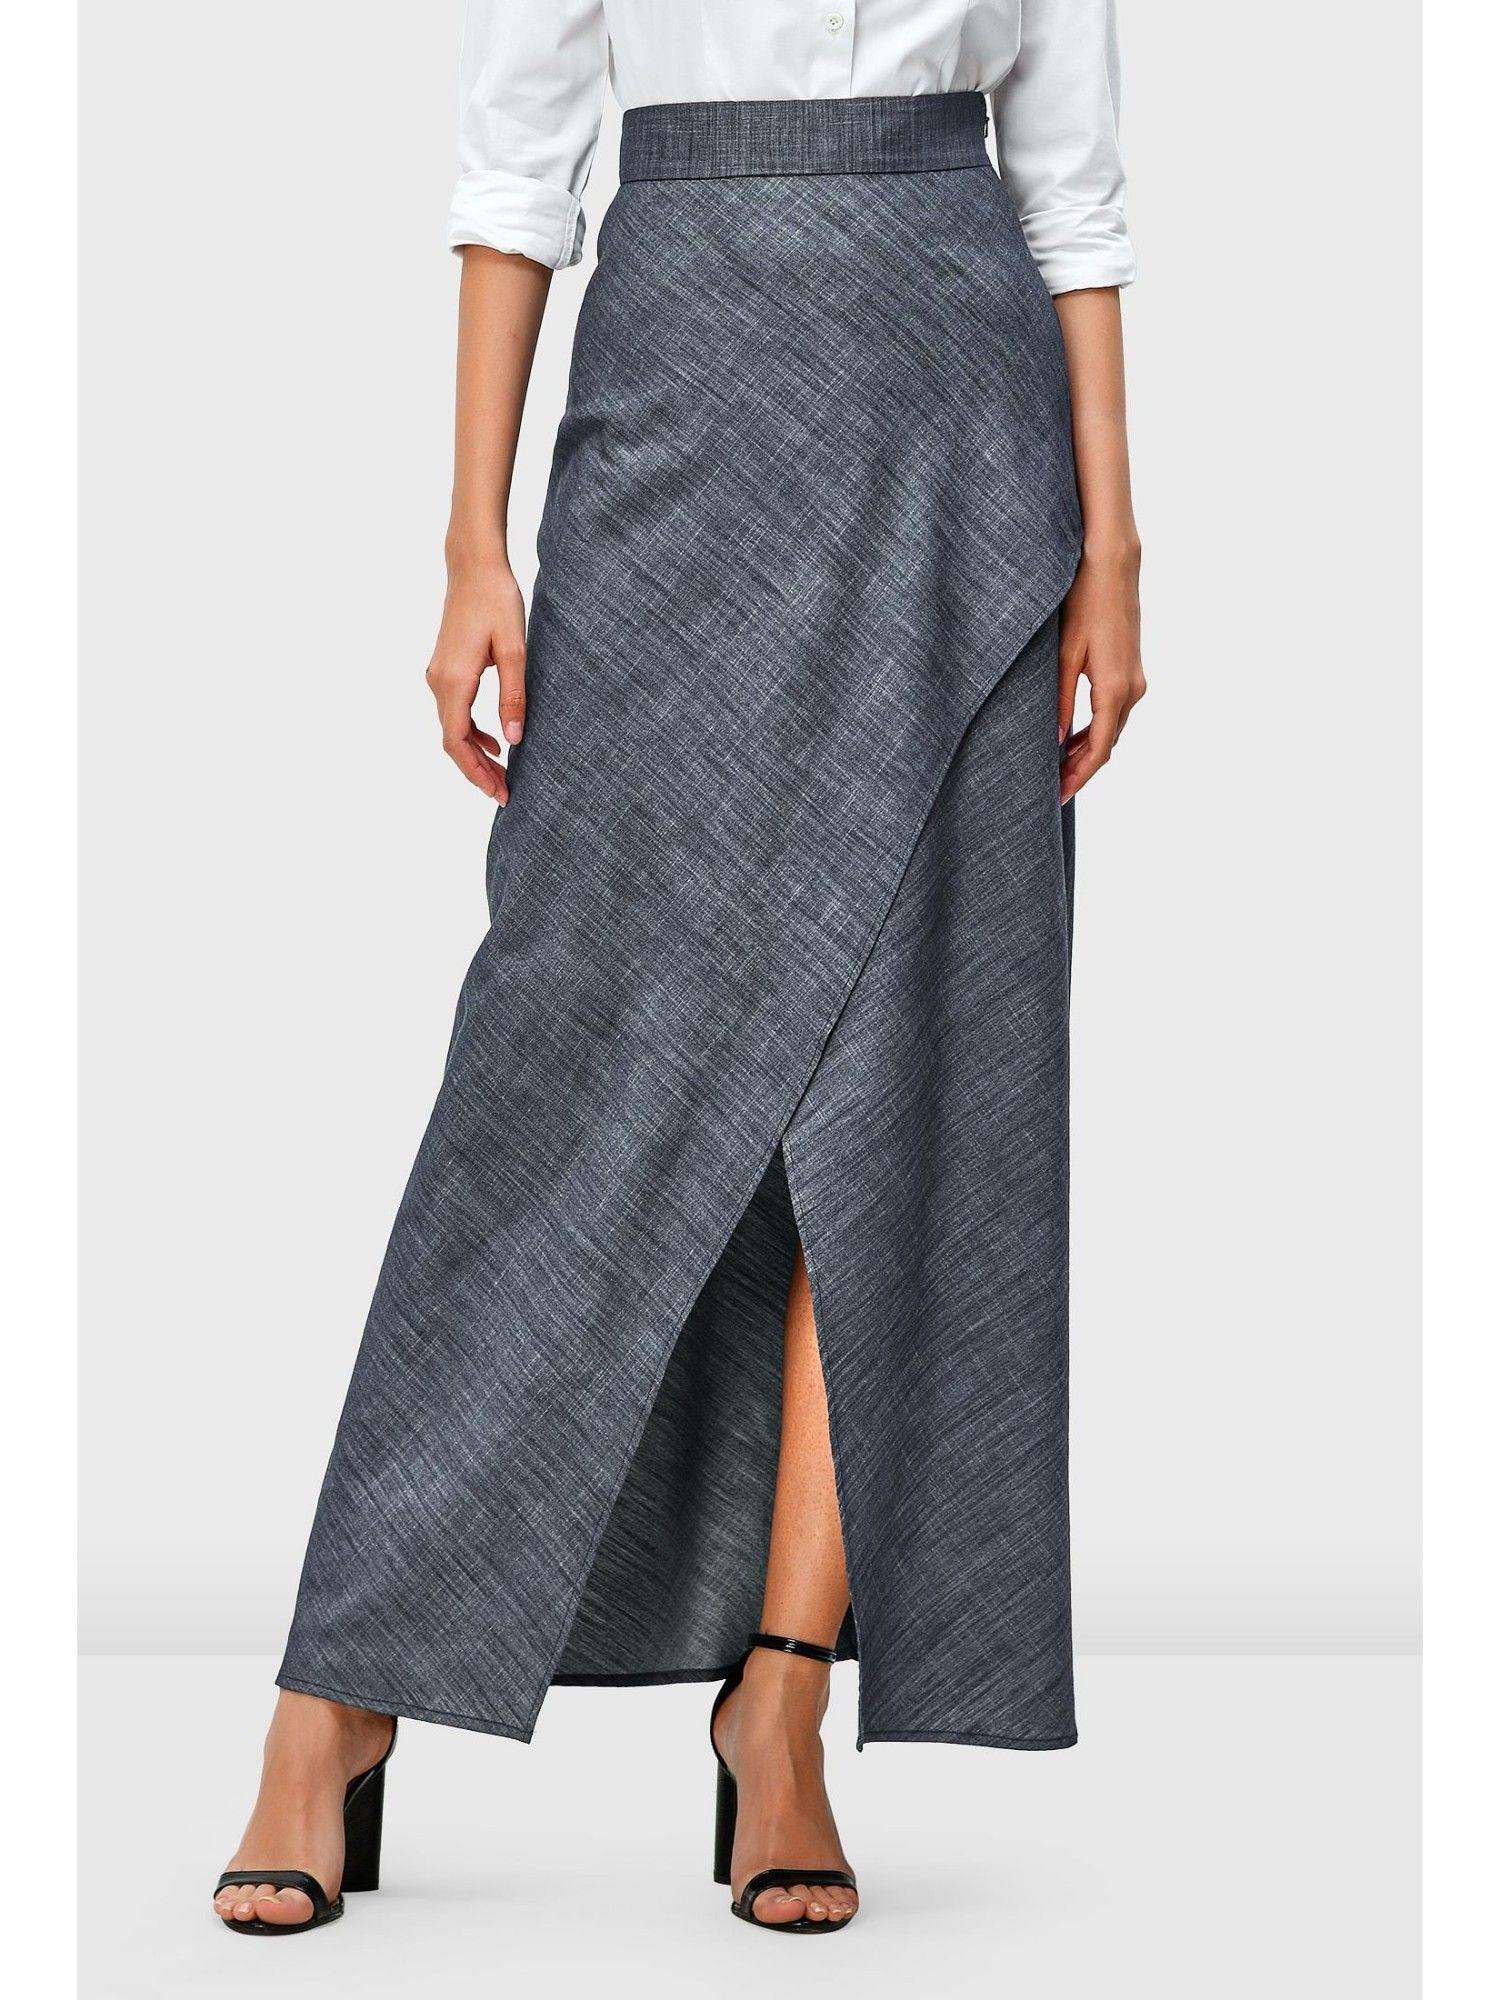 cotton chambray faux wrap skirt